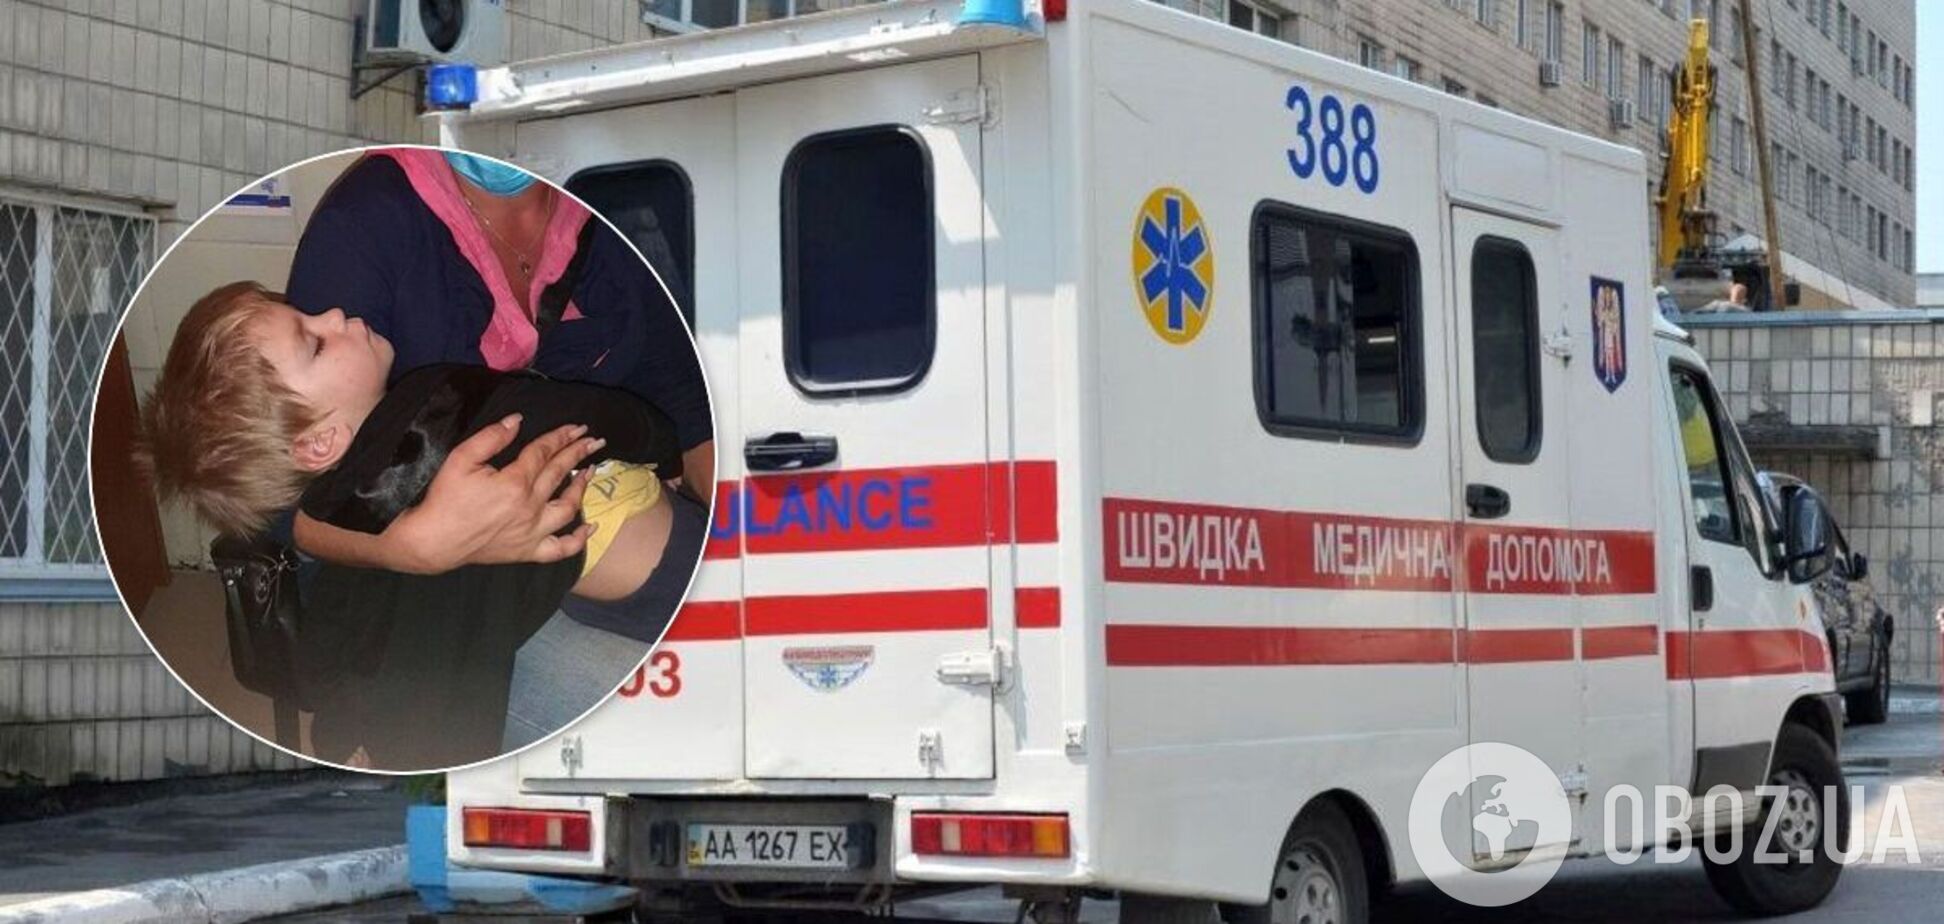 В Одессе мать избила 2-летнего ребенка на глазах у прохожих: мальчика забрала скорая. Фото